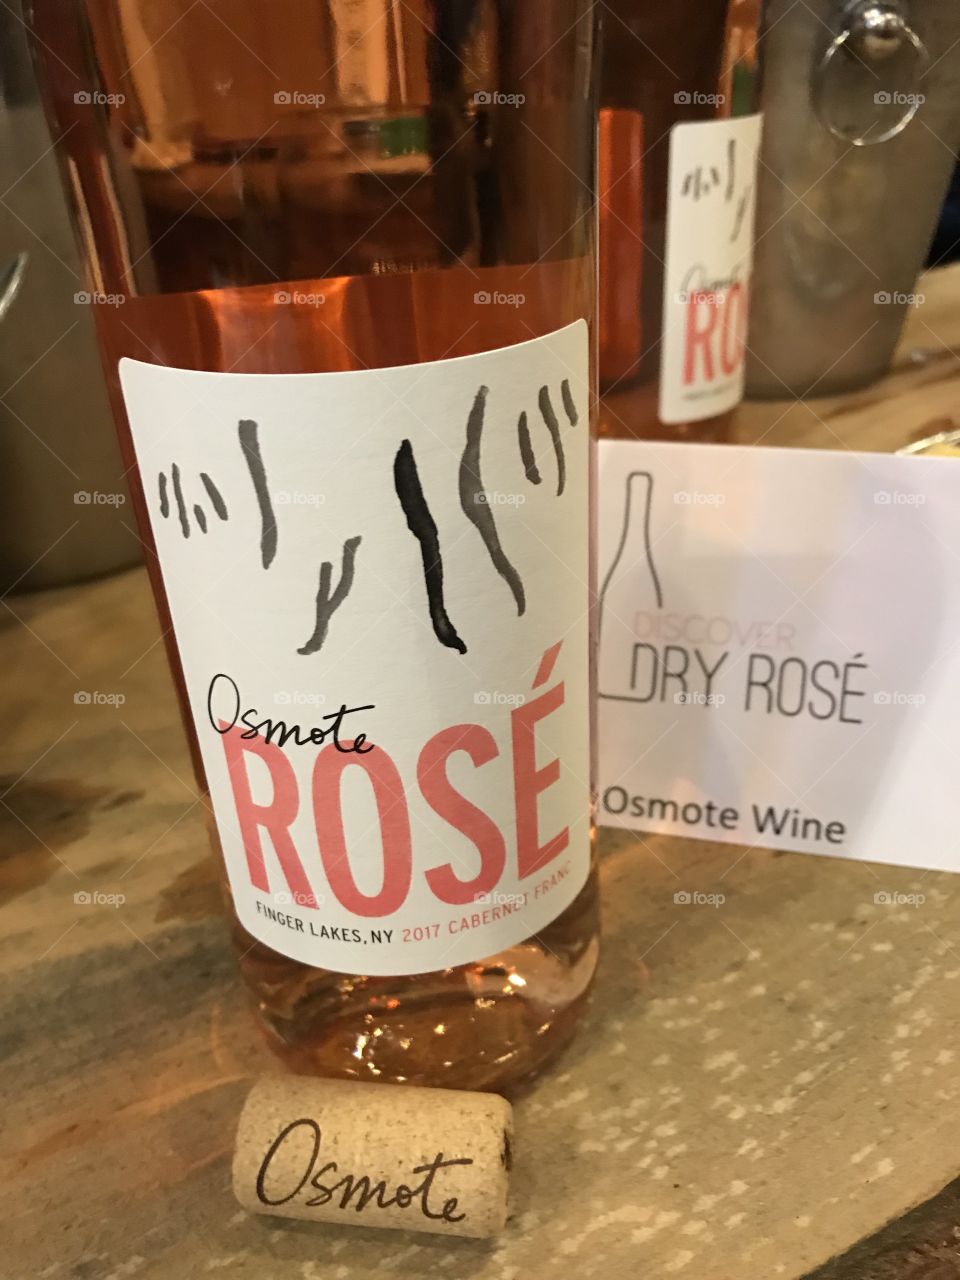 Rosé season